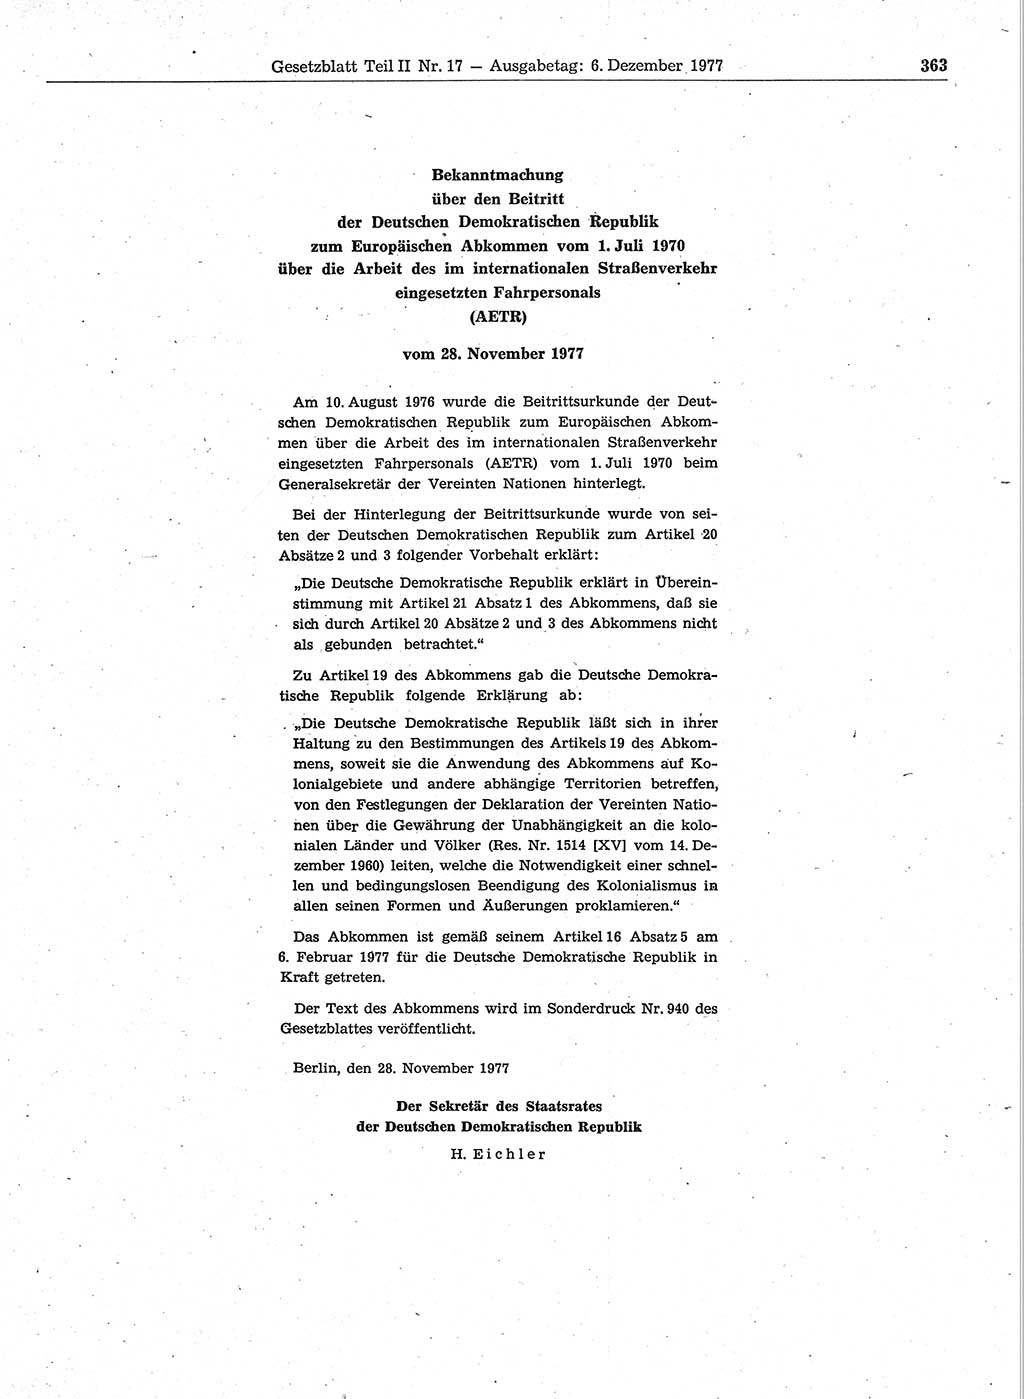 Gesetzblatt (GBl.) der Deutschen Demokratischen Republik (DDR) Teil ⅠⅠ 1977, Seite 363 (GBl. DDR ⅠⅠ 1977, S. 363)